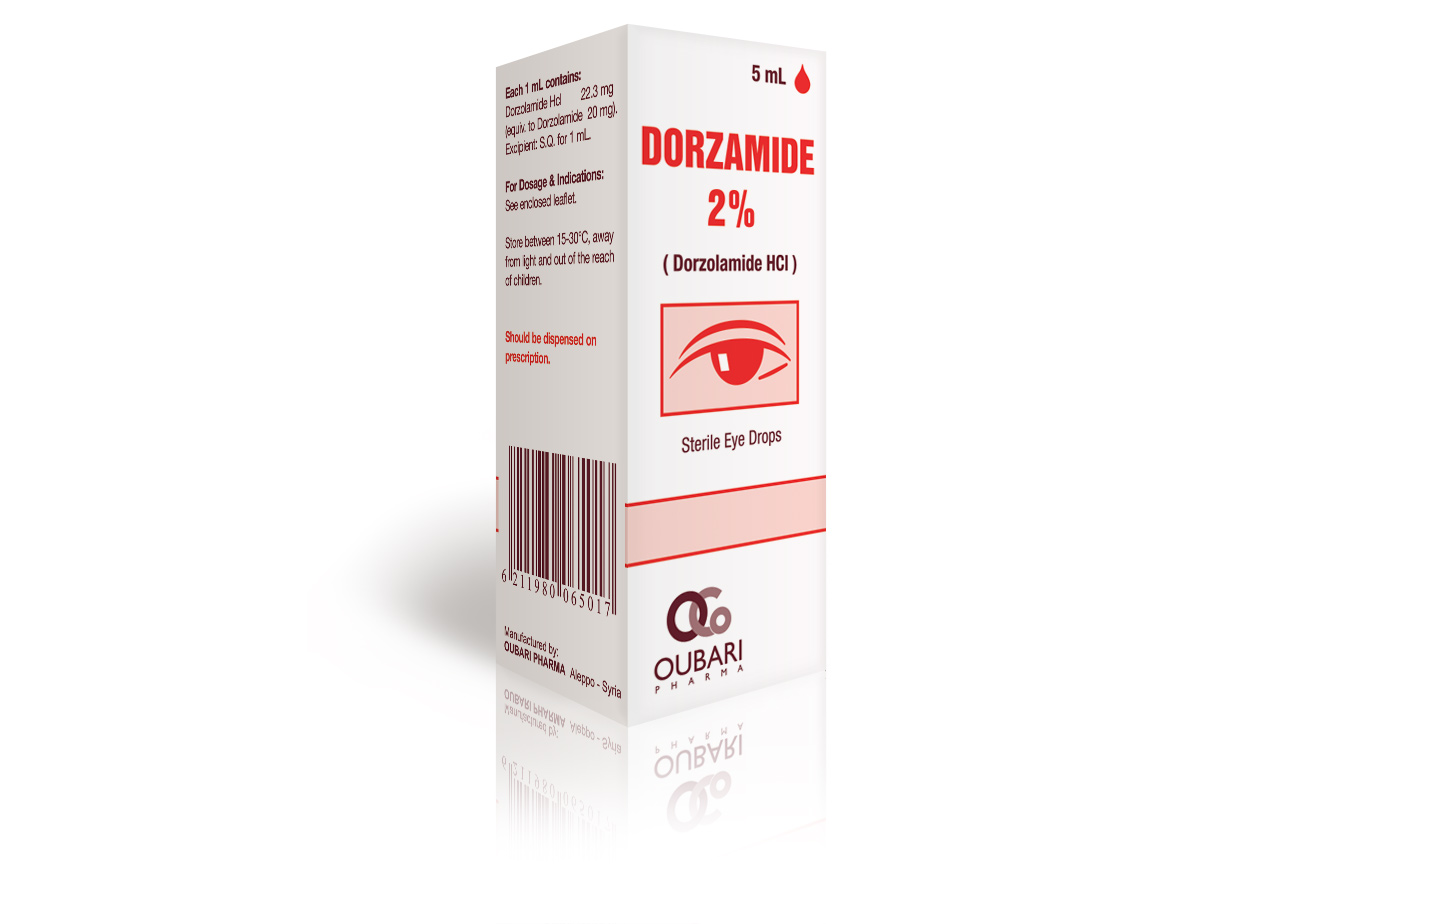 Dorzolamide eye drops